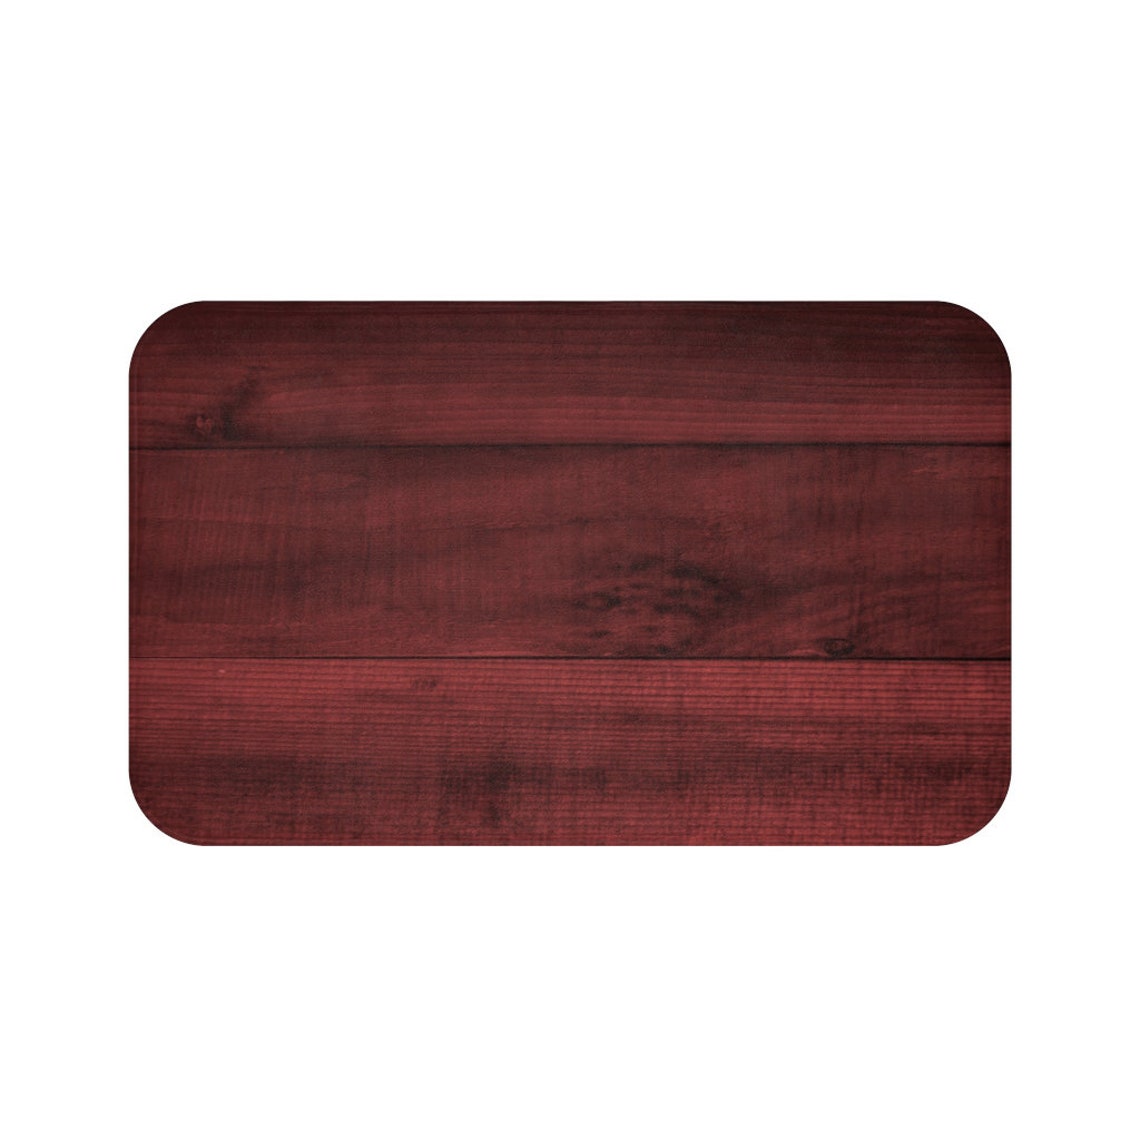 Rustic Red Wood Memory Foam Mat - MAT140